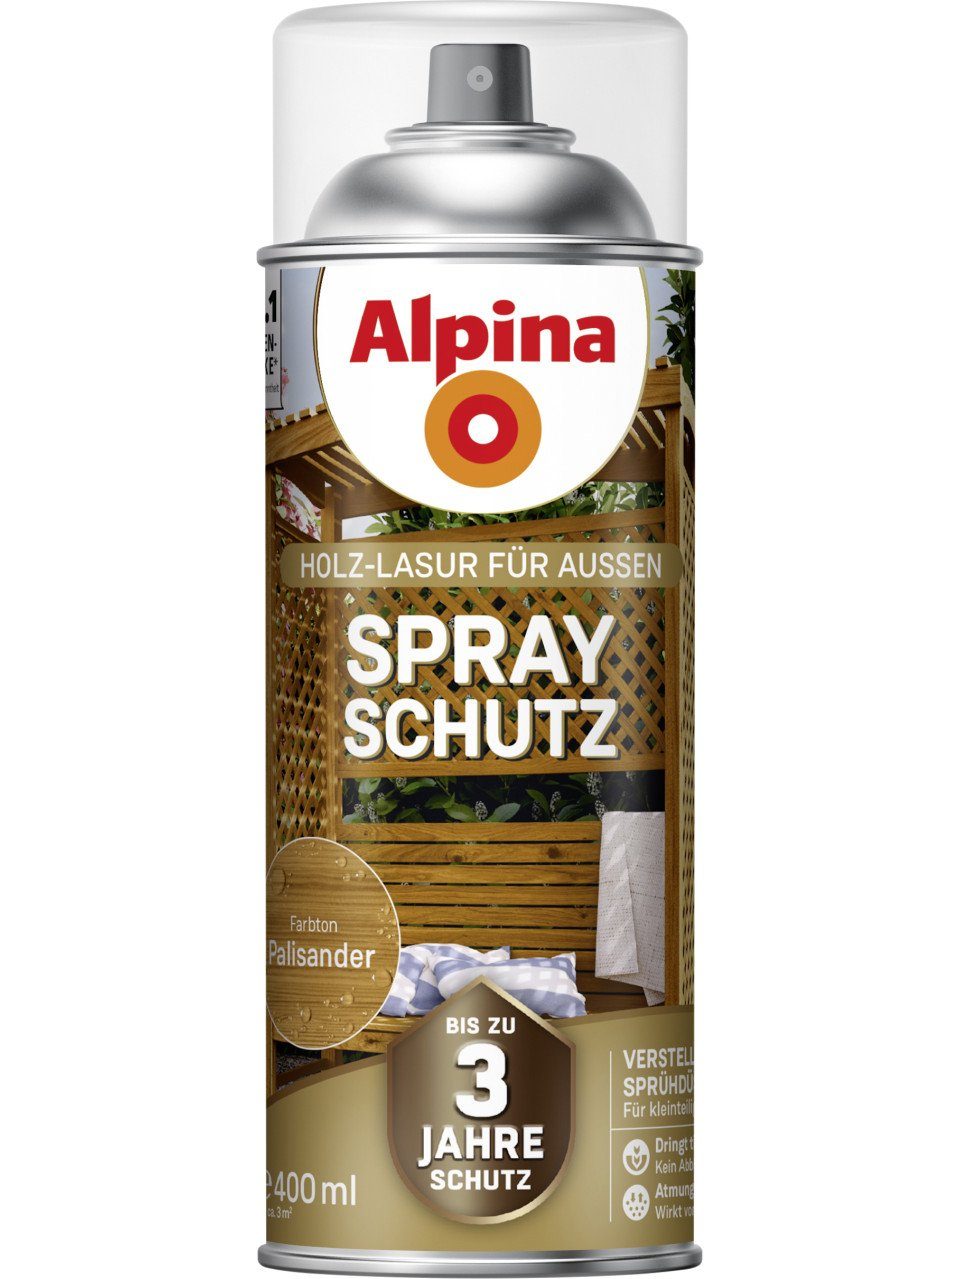 Lasur Alpina Alpina palisander Spray-Schutz L 0,4